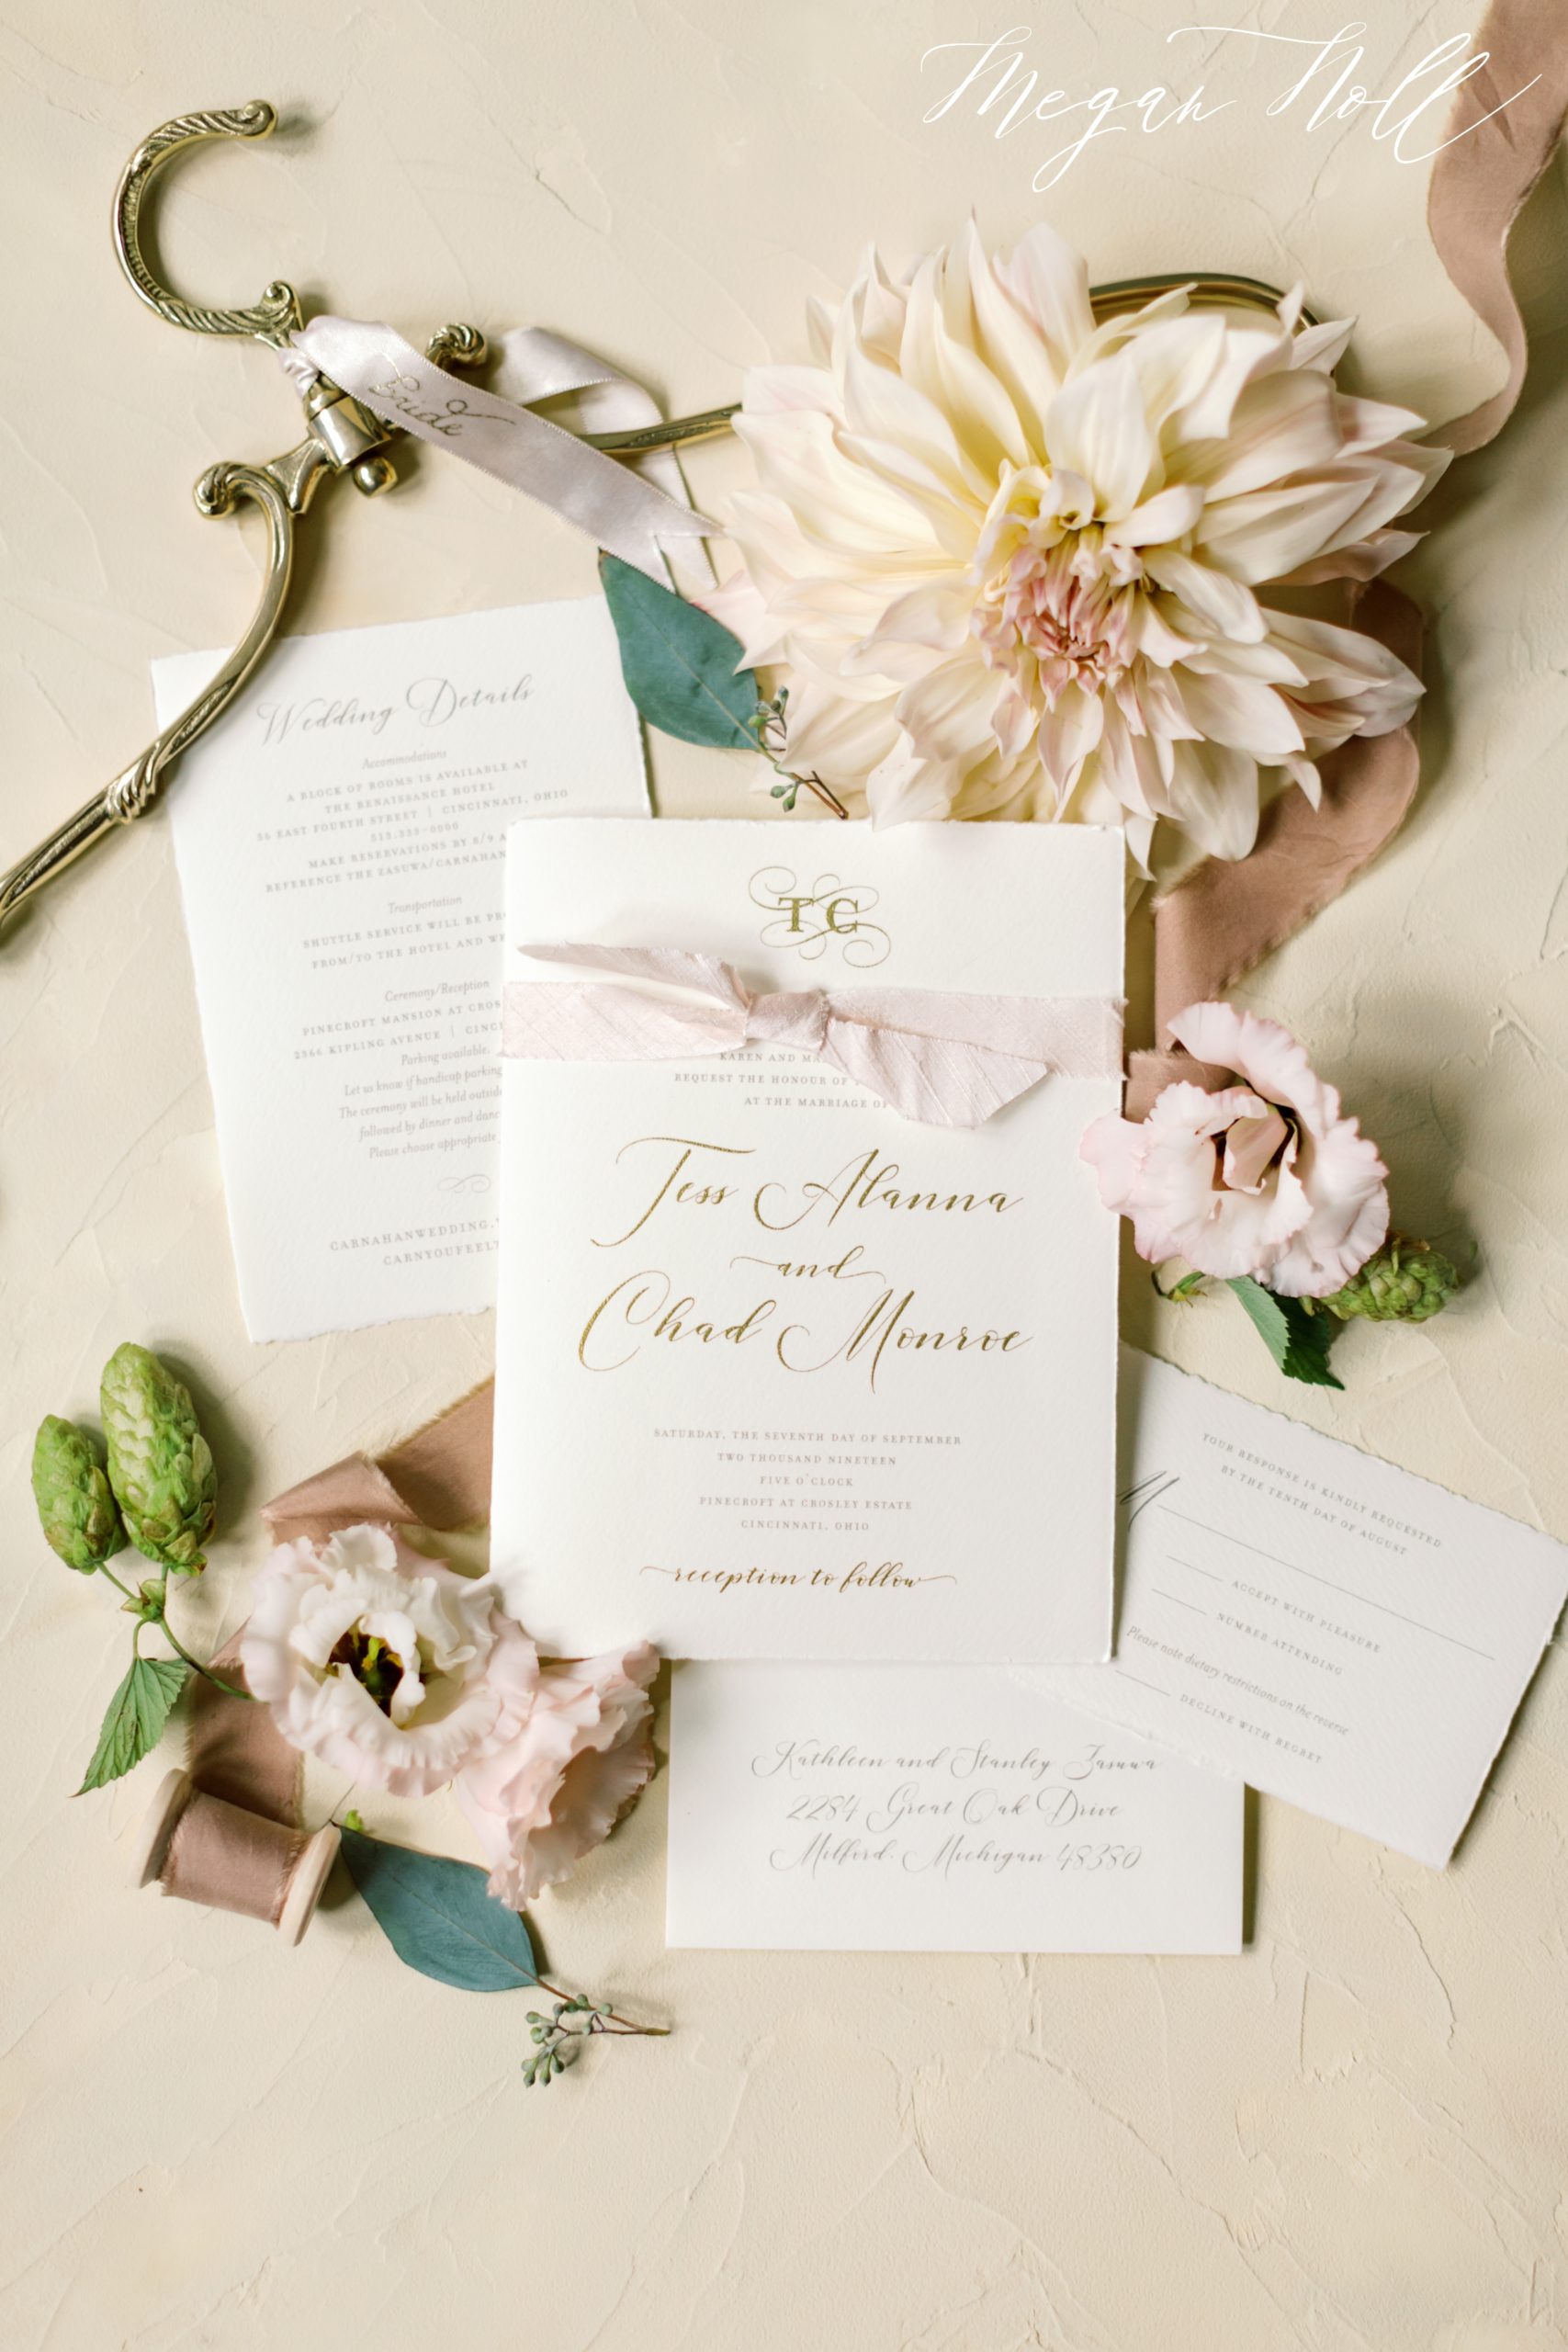 Custom wedding invitations for Cincinnati Wedding by Poeme 